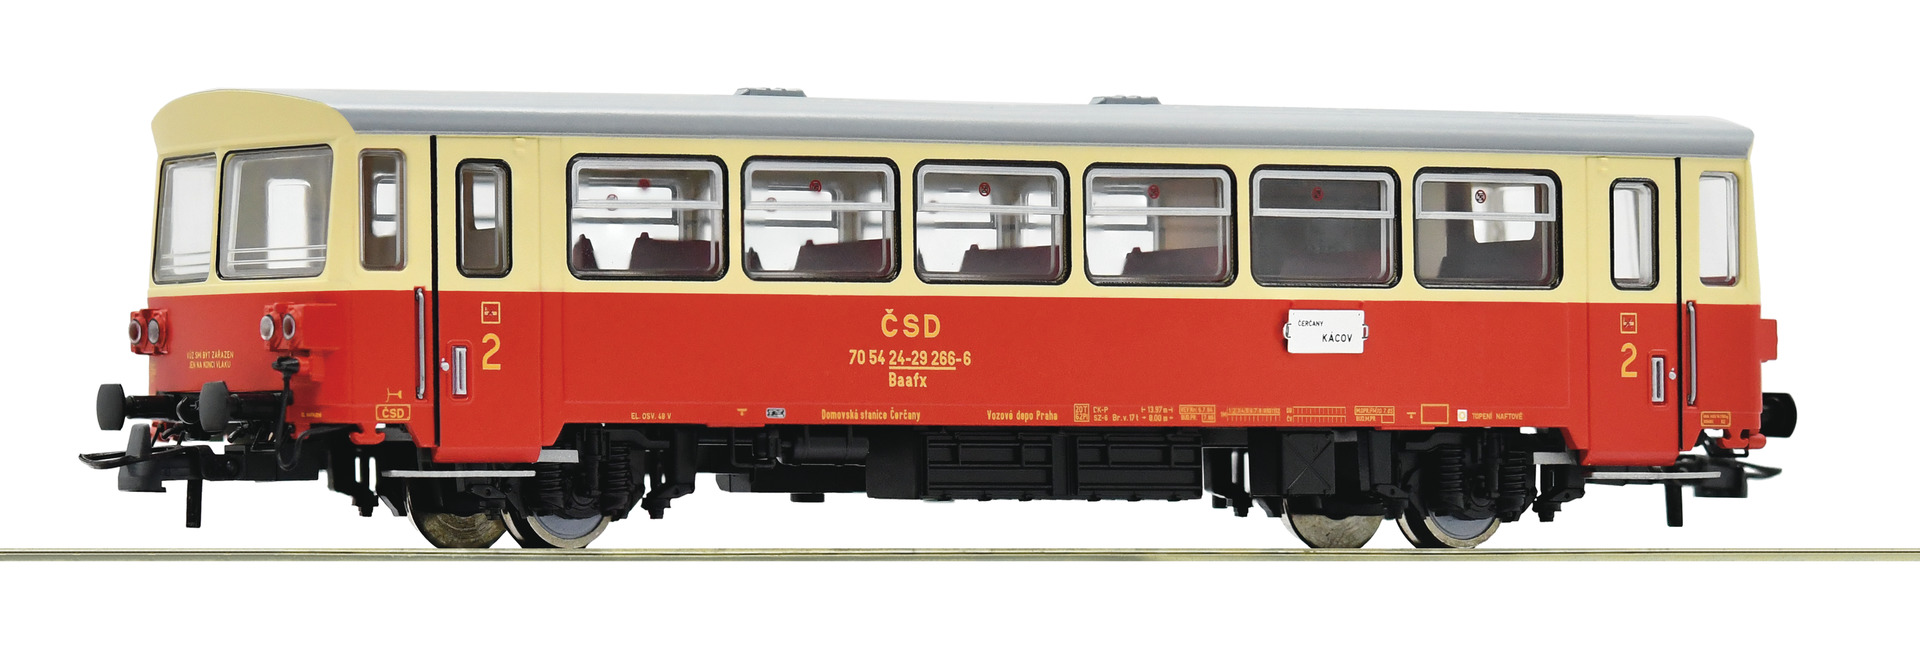 Roco 74241  Trailer for diesel railcar M 152.0, CSD